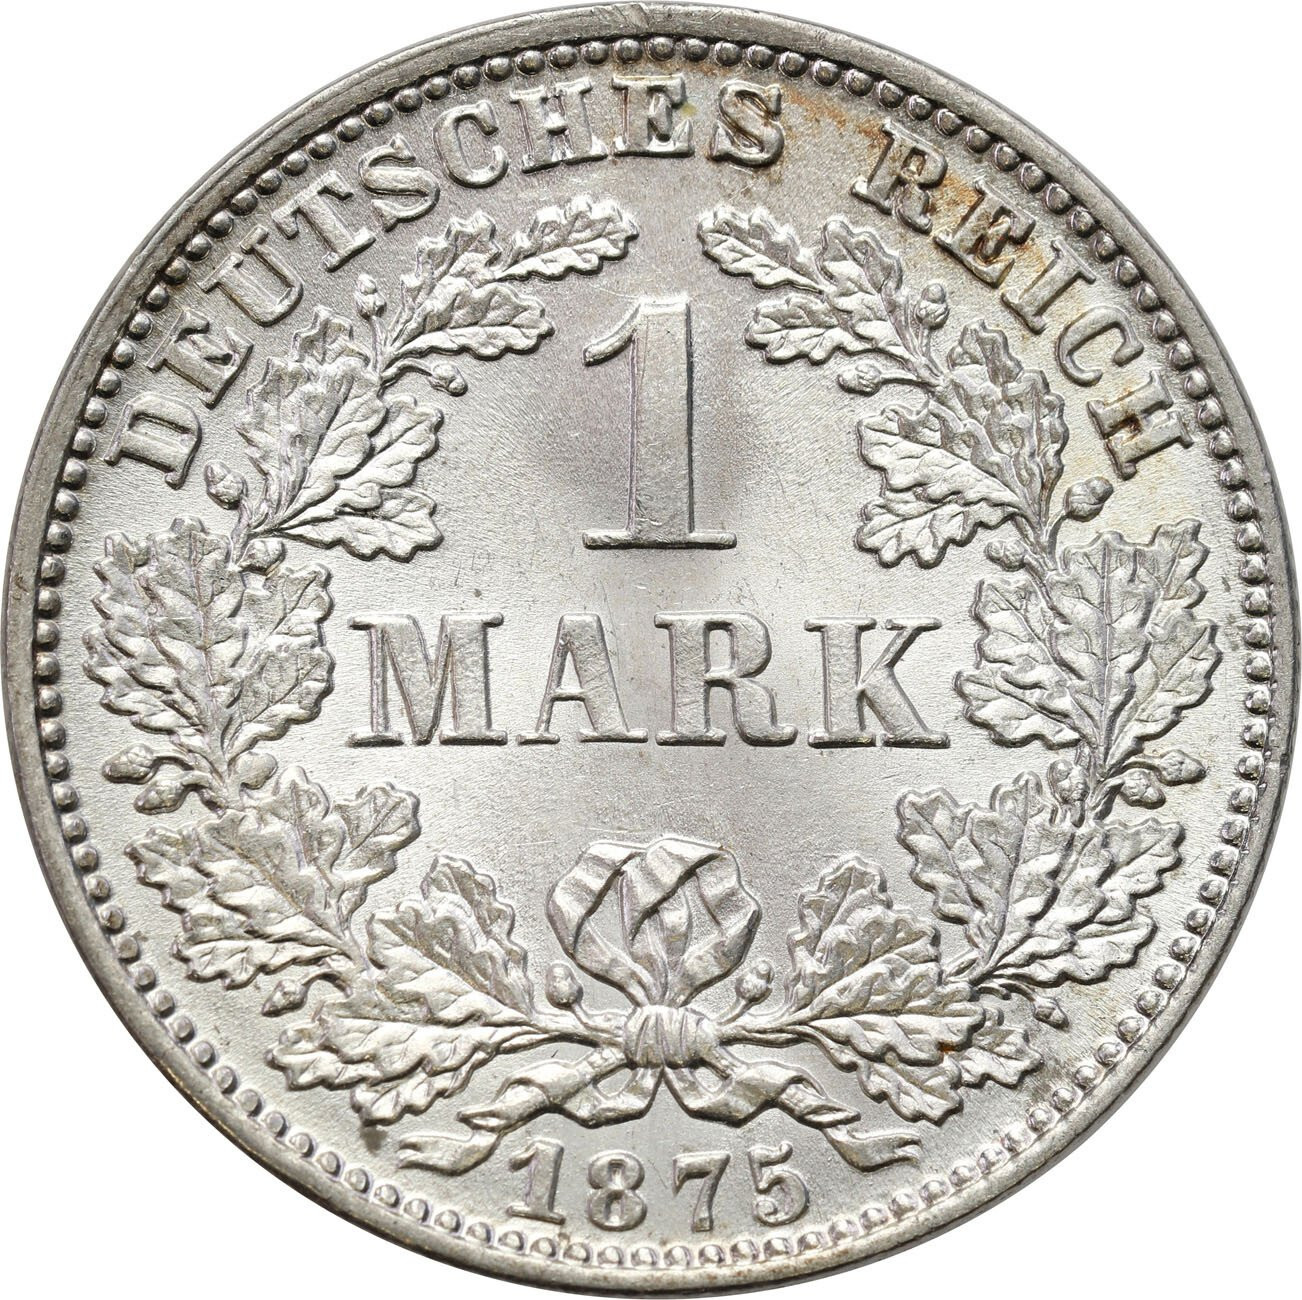 Niemcy, Prusy. 1 marka 1875 C, Frankfurt – RZADSZE